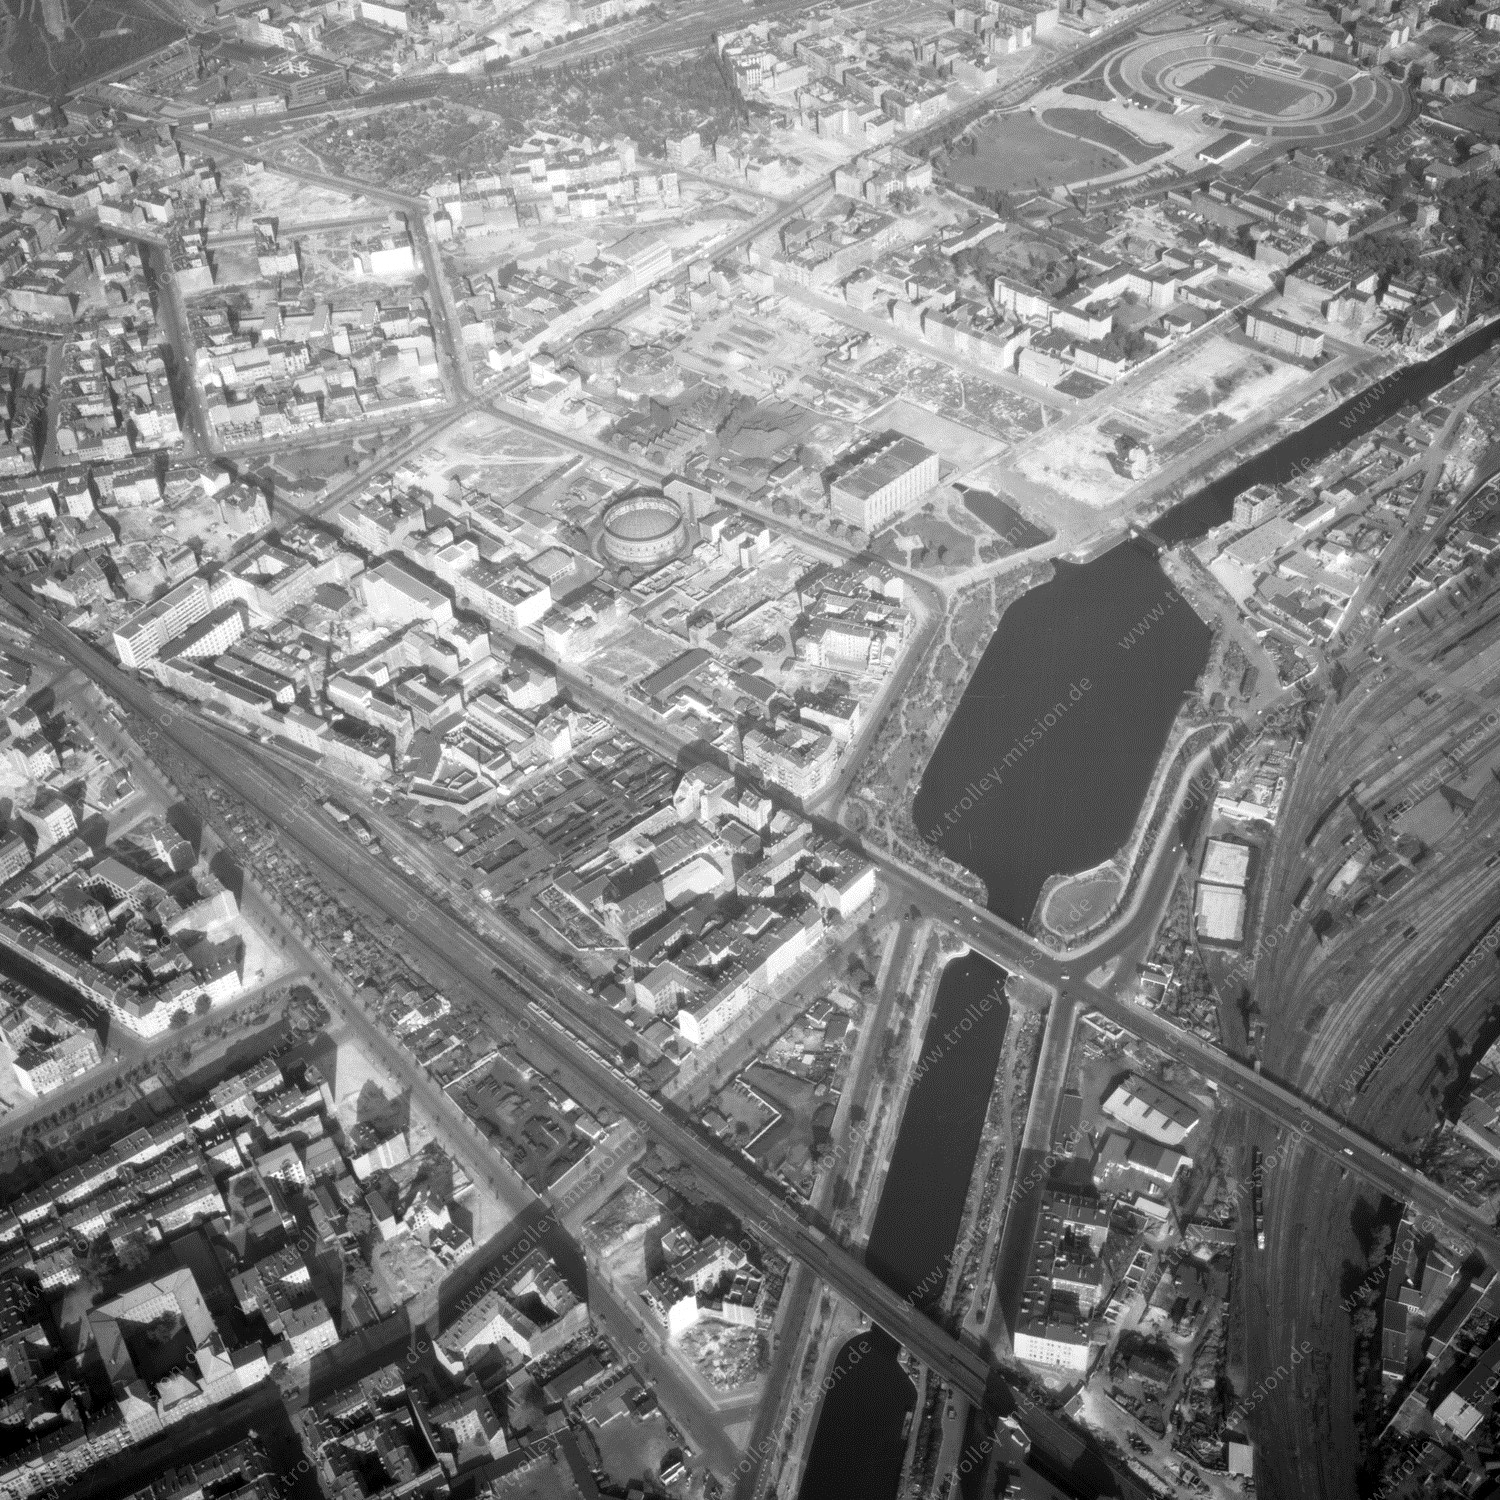 Alte Fotos und Luftbilder von Berlin - Luftbildaufnahme Nr. 05 - Historische Luftaufnahmen von West-Berlin aus dem Jahr 1954 - Flugstrecke Papa